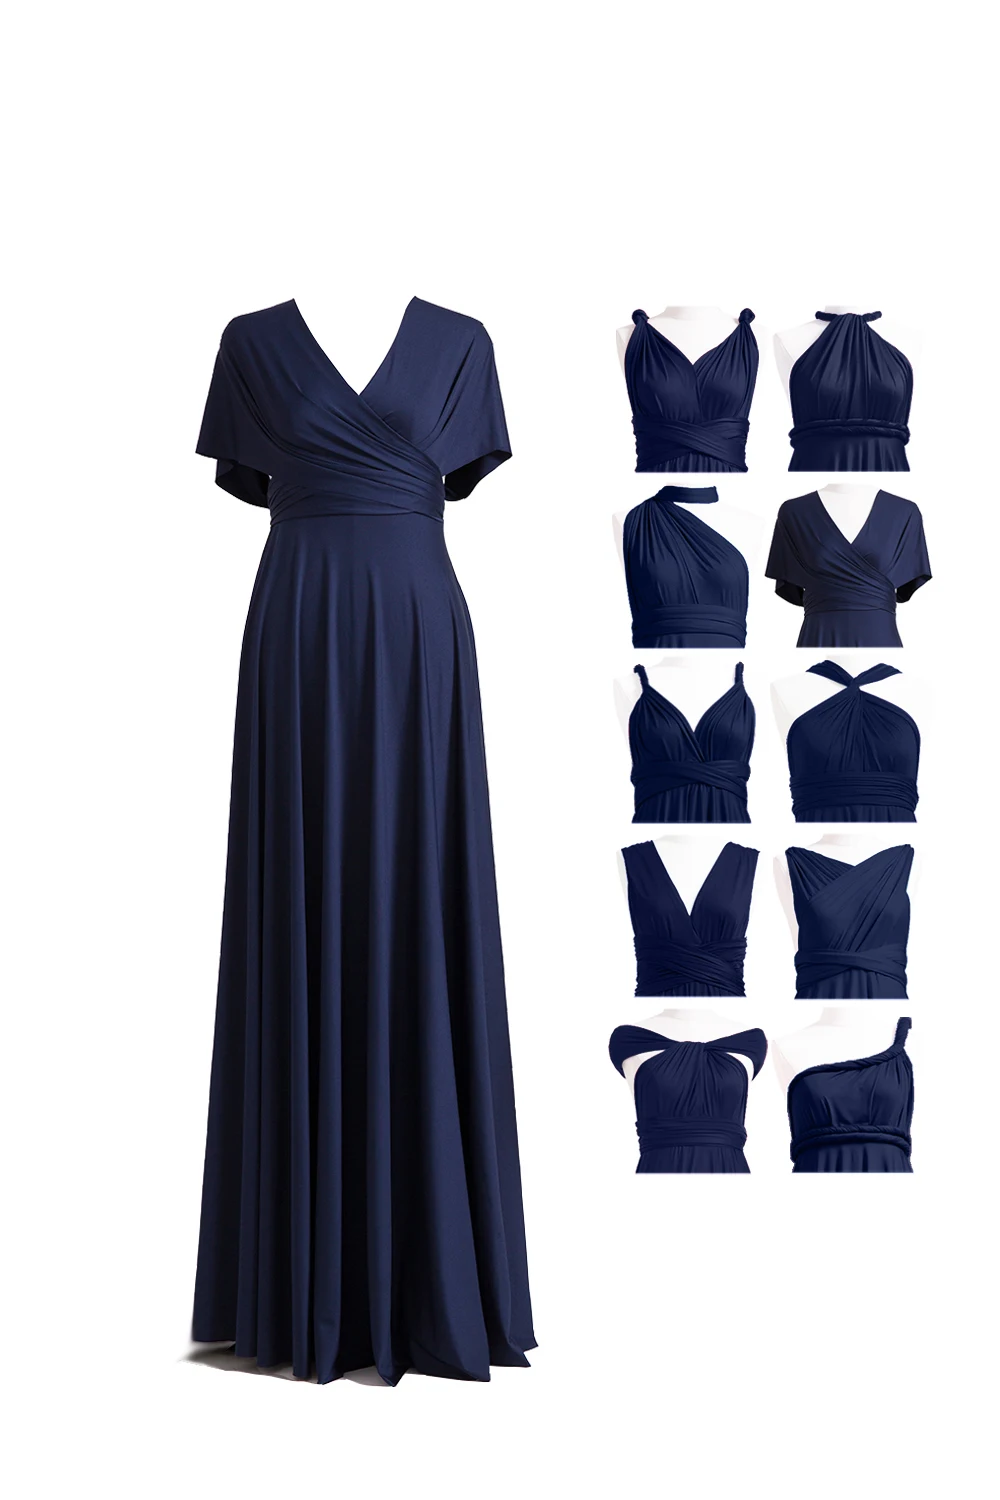 Темно-синее коктейльное платье Бесконечность Макси длинное платье многоходовое платье размера плюс платье-трансформер с запахом вечерние коктейльные платья